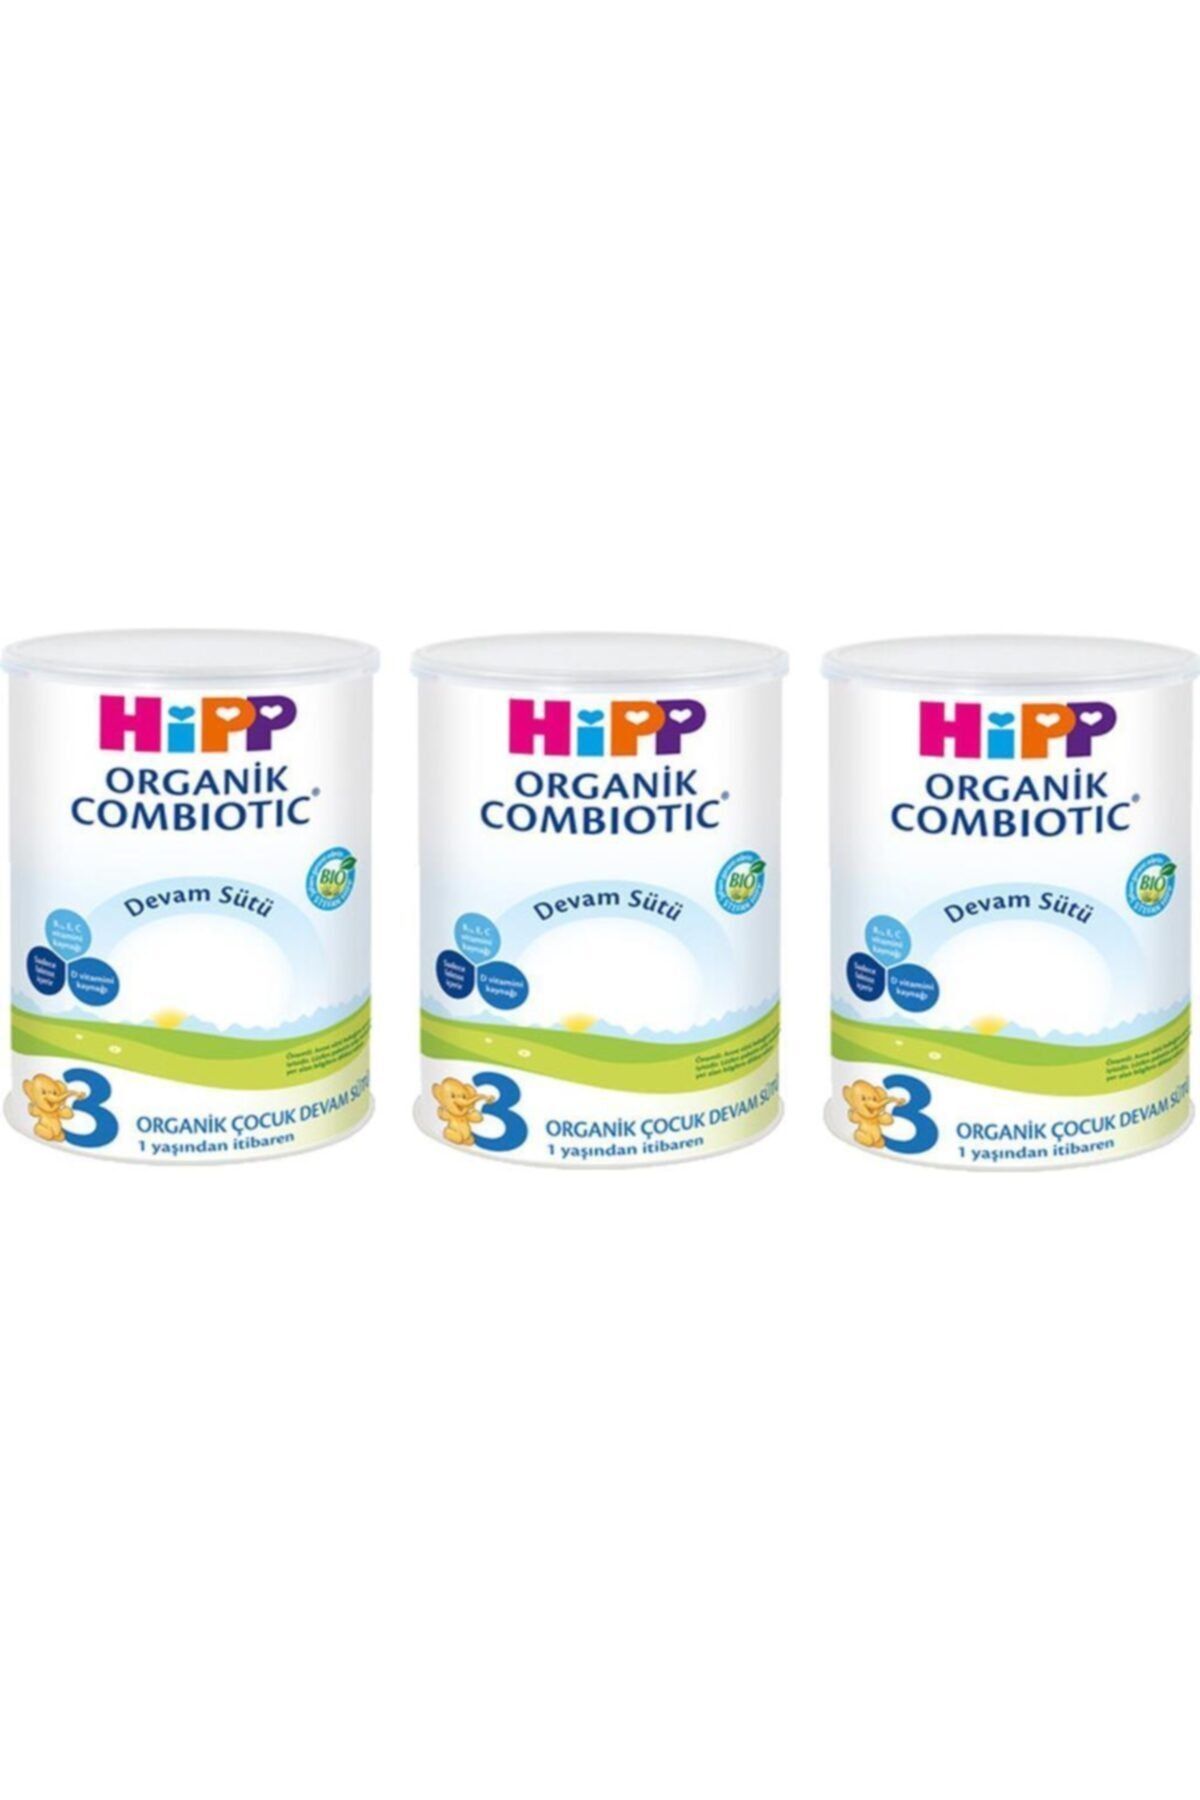 Hipp 3 Organik Combiotic Devam Sütü 350 Gr - 3'lü